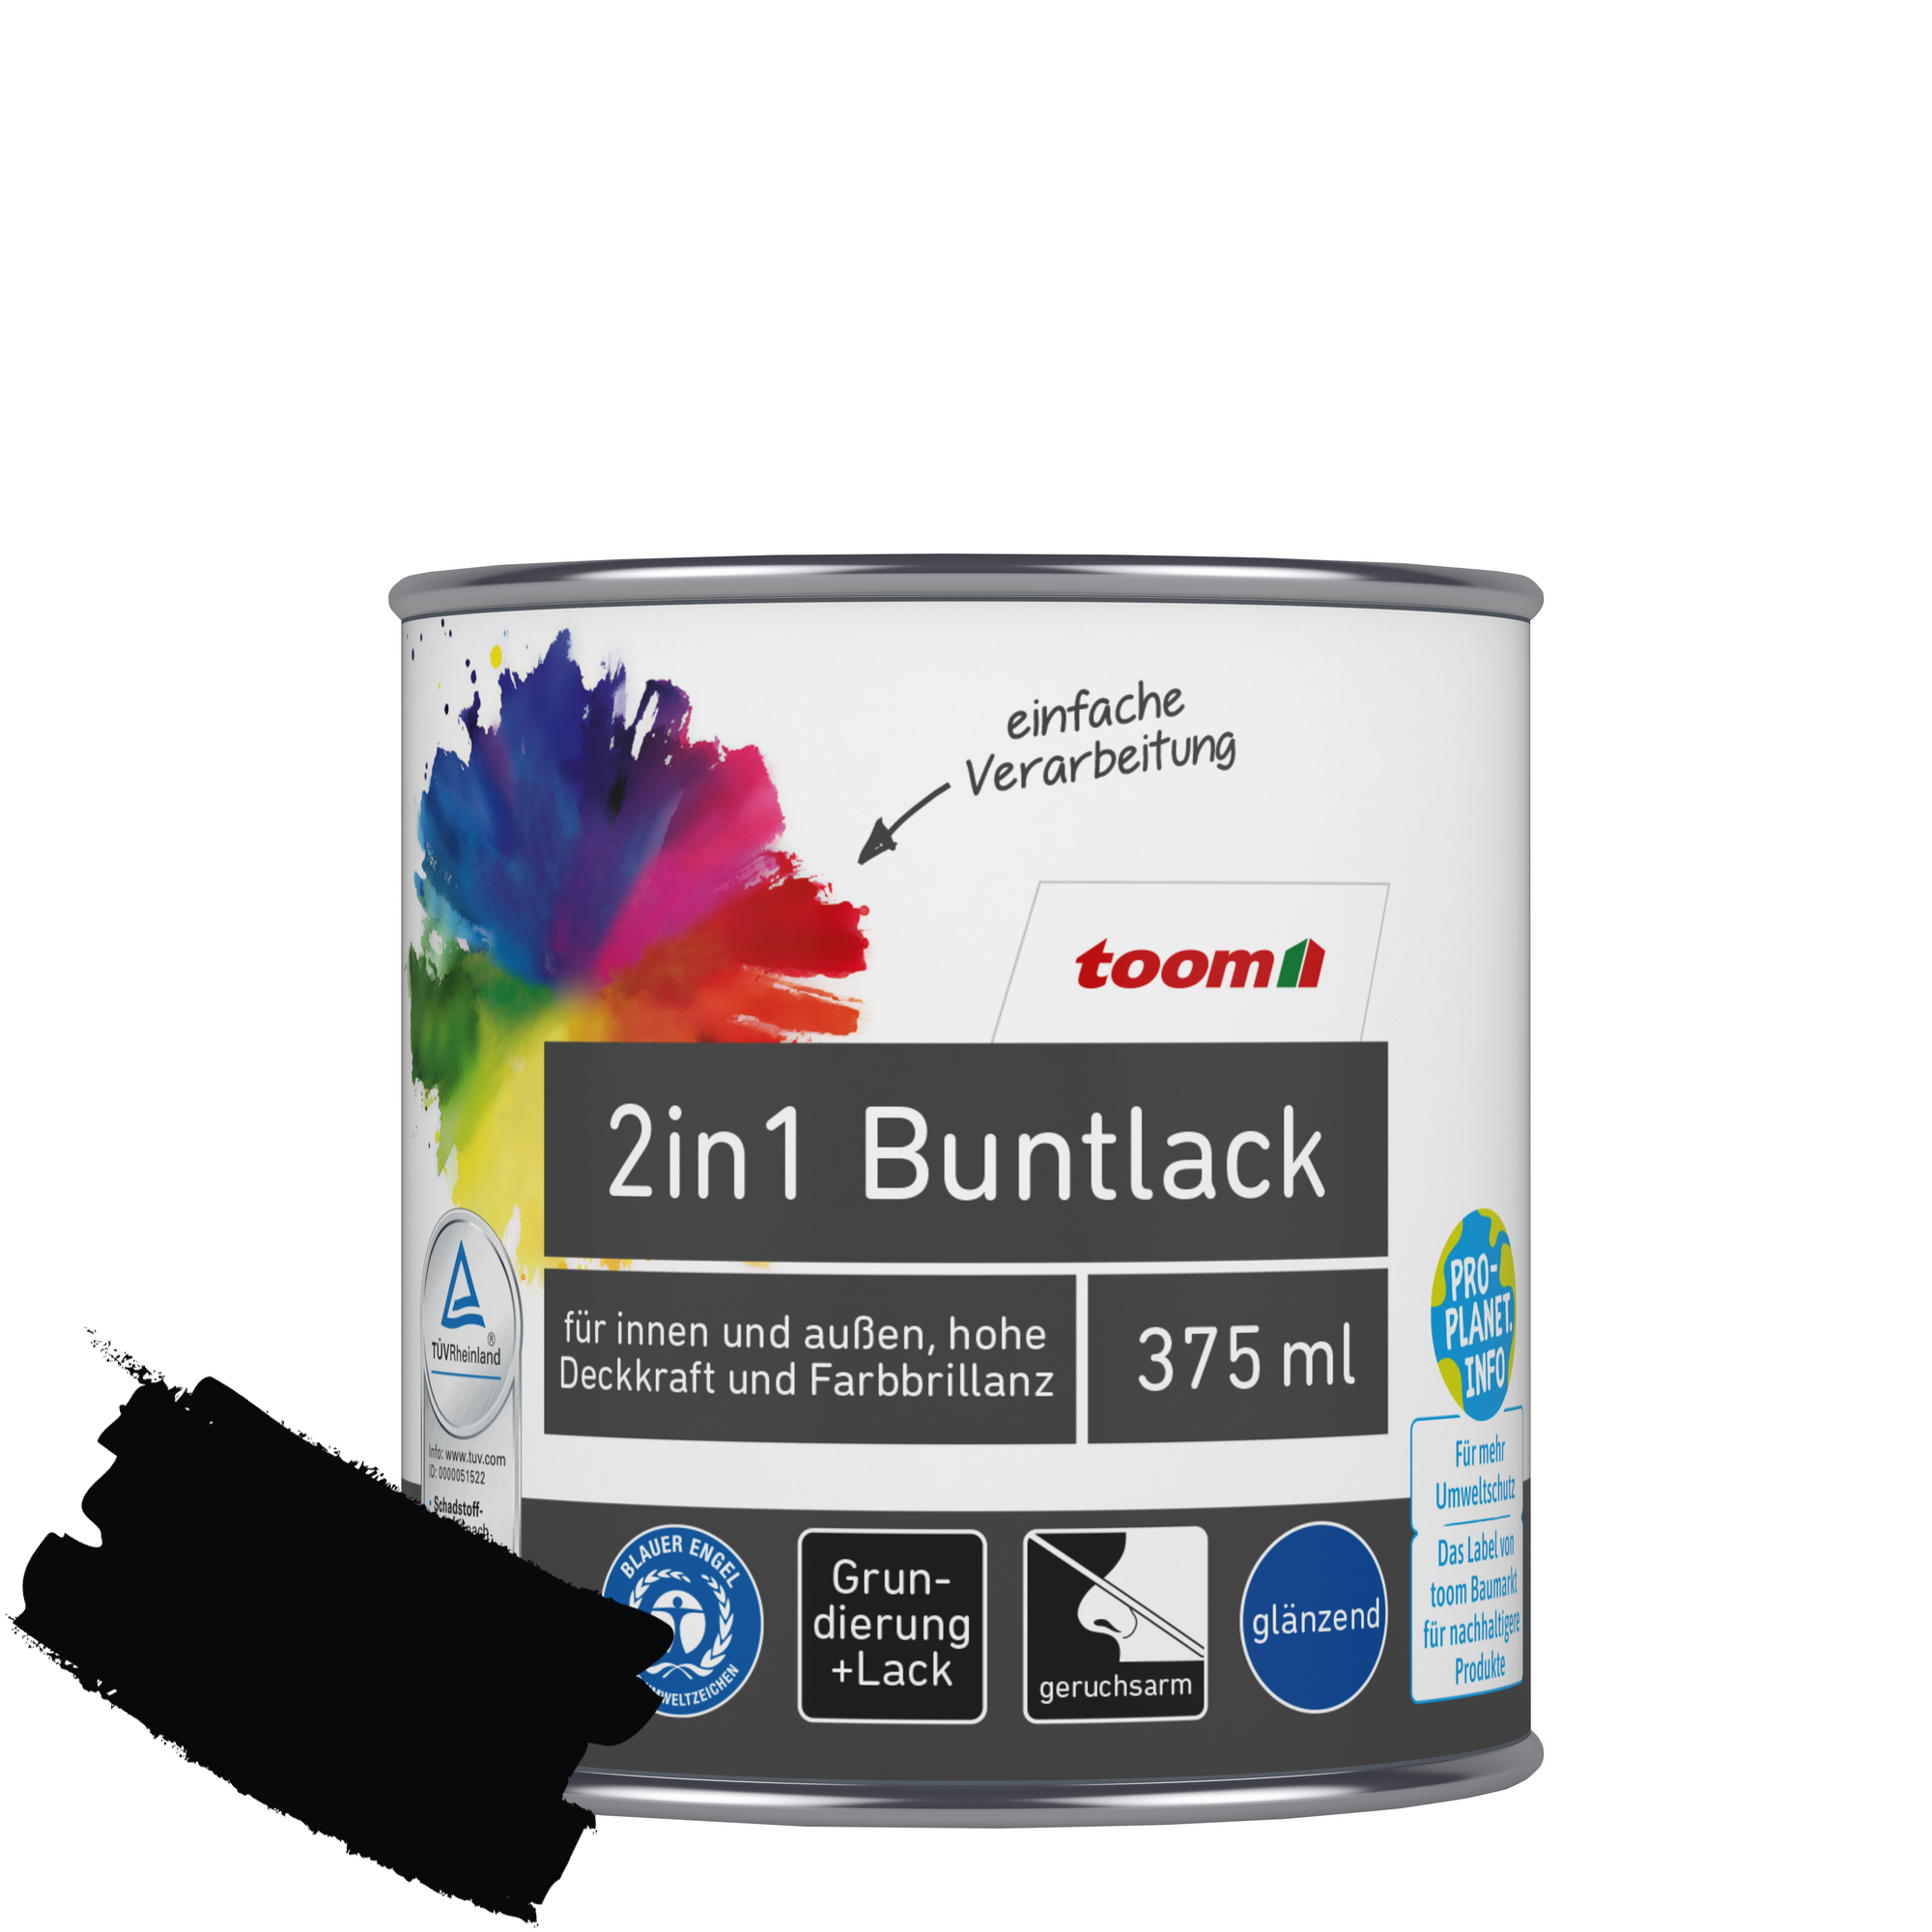 2in1 Buntlack 'Mitternacht' tiefschwarz glänzend 375 ml + product picture